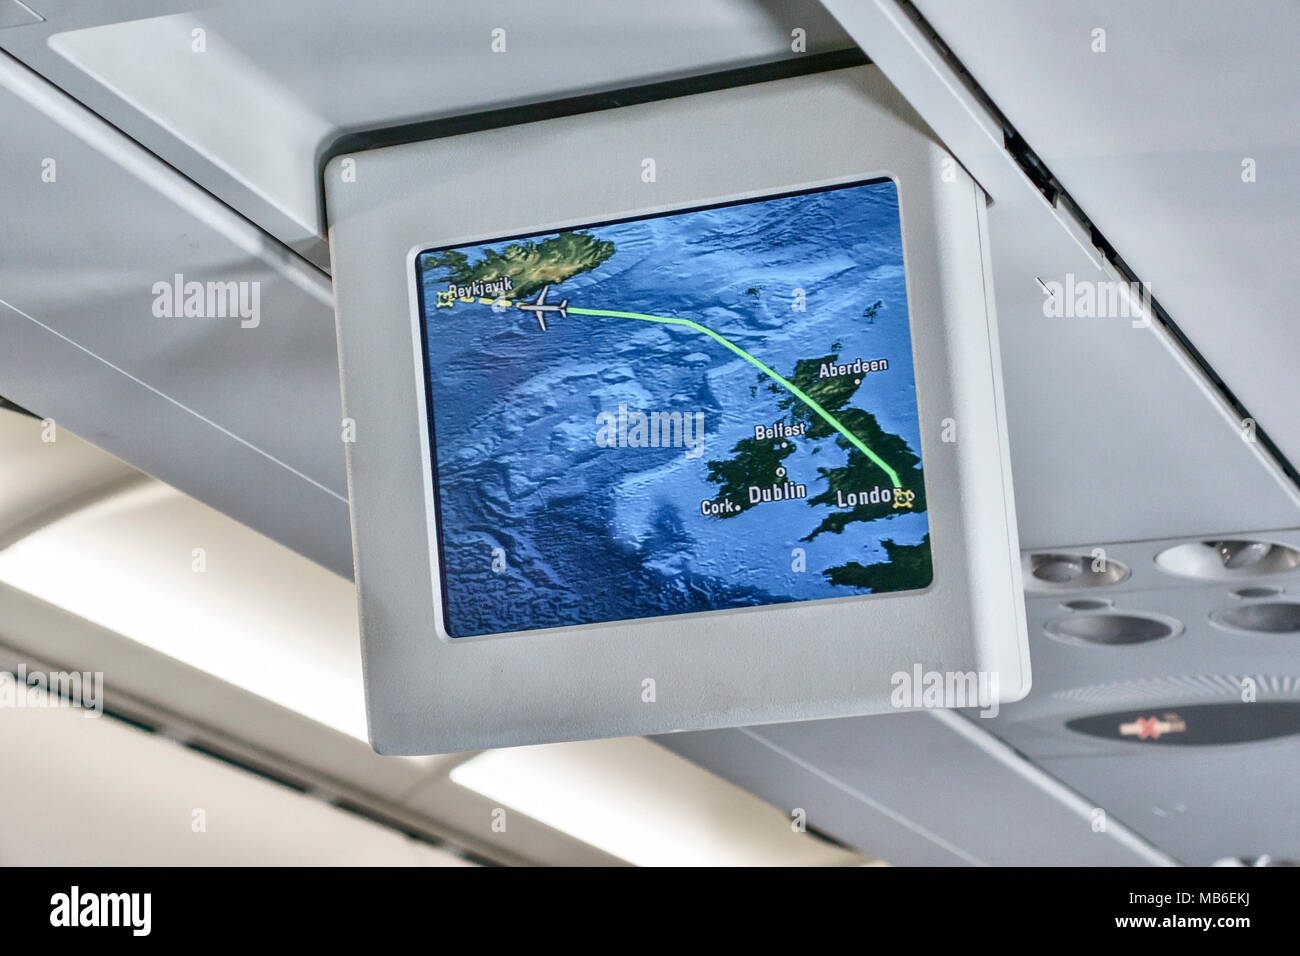 L'intérieur d'un British Airways Airbus A320, montrant un écran affichant la trajectoire de vol de Londres à Reykjavik Banque D'Images